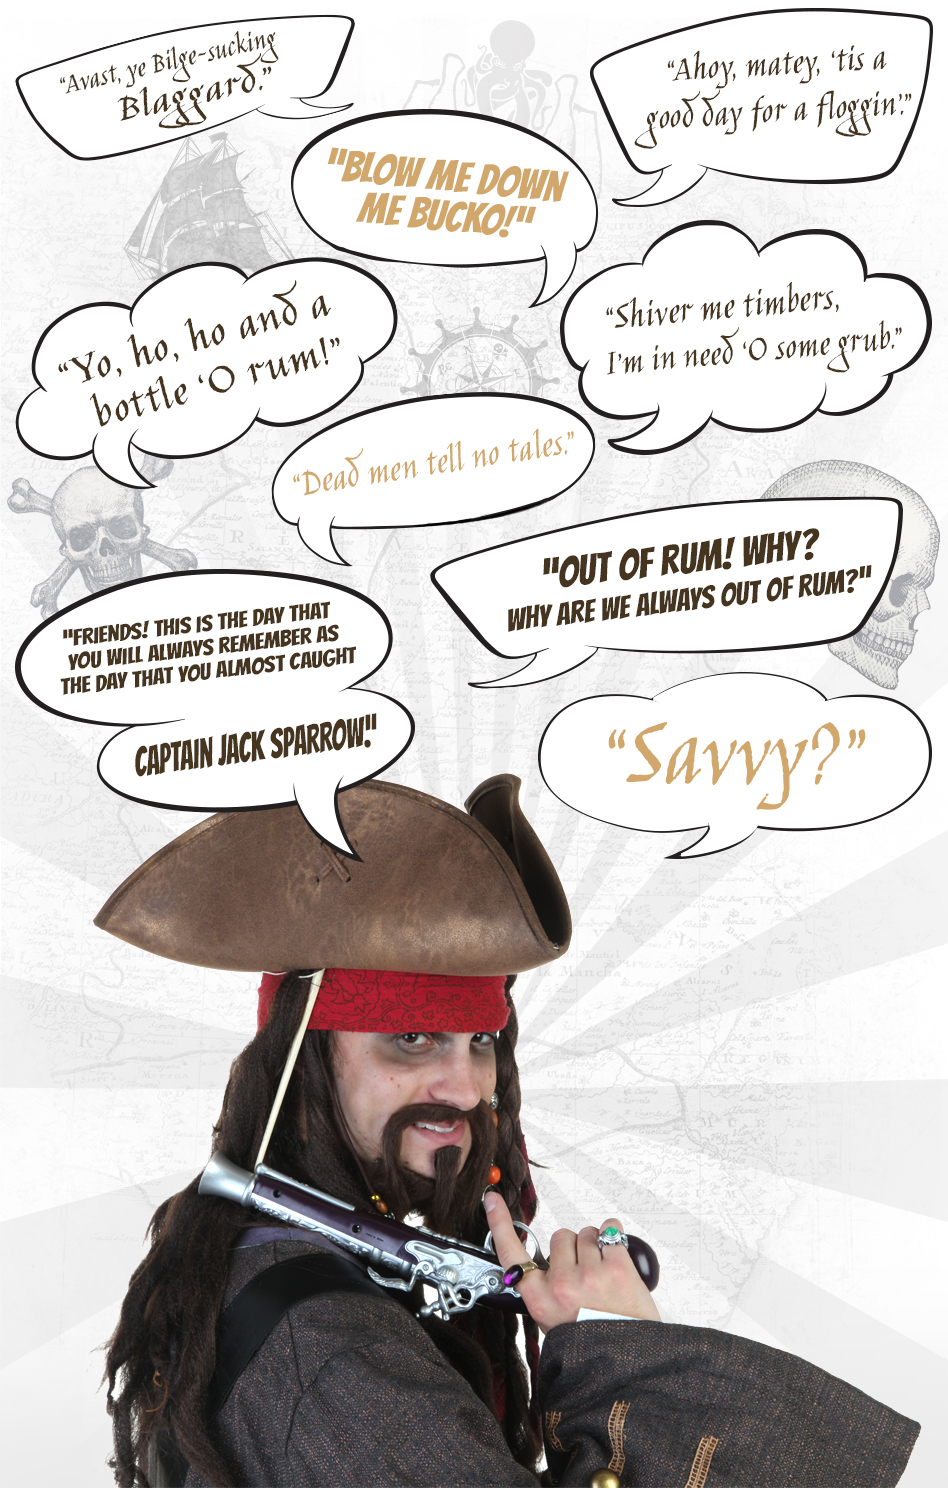 Pirate Talk Quotes. QuotesGram